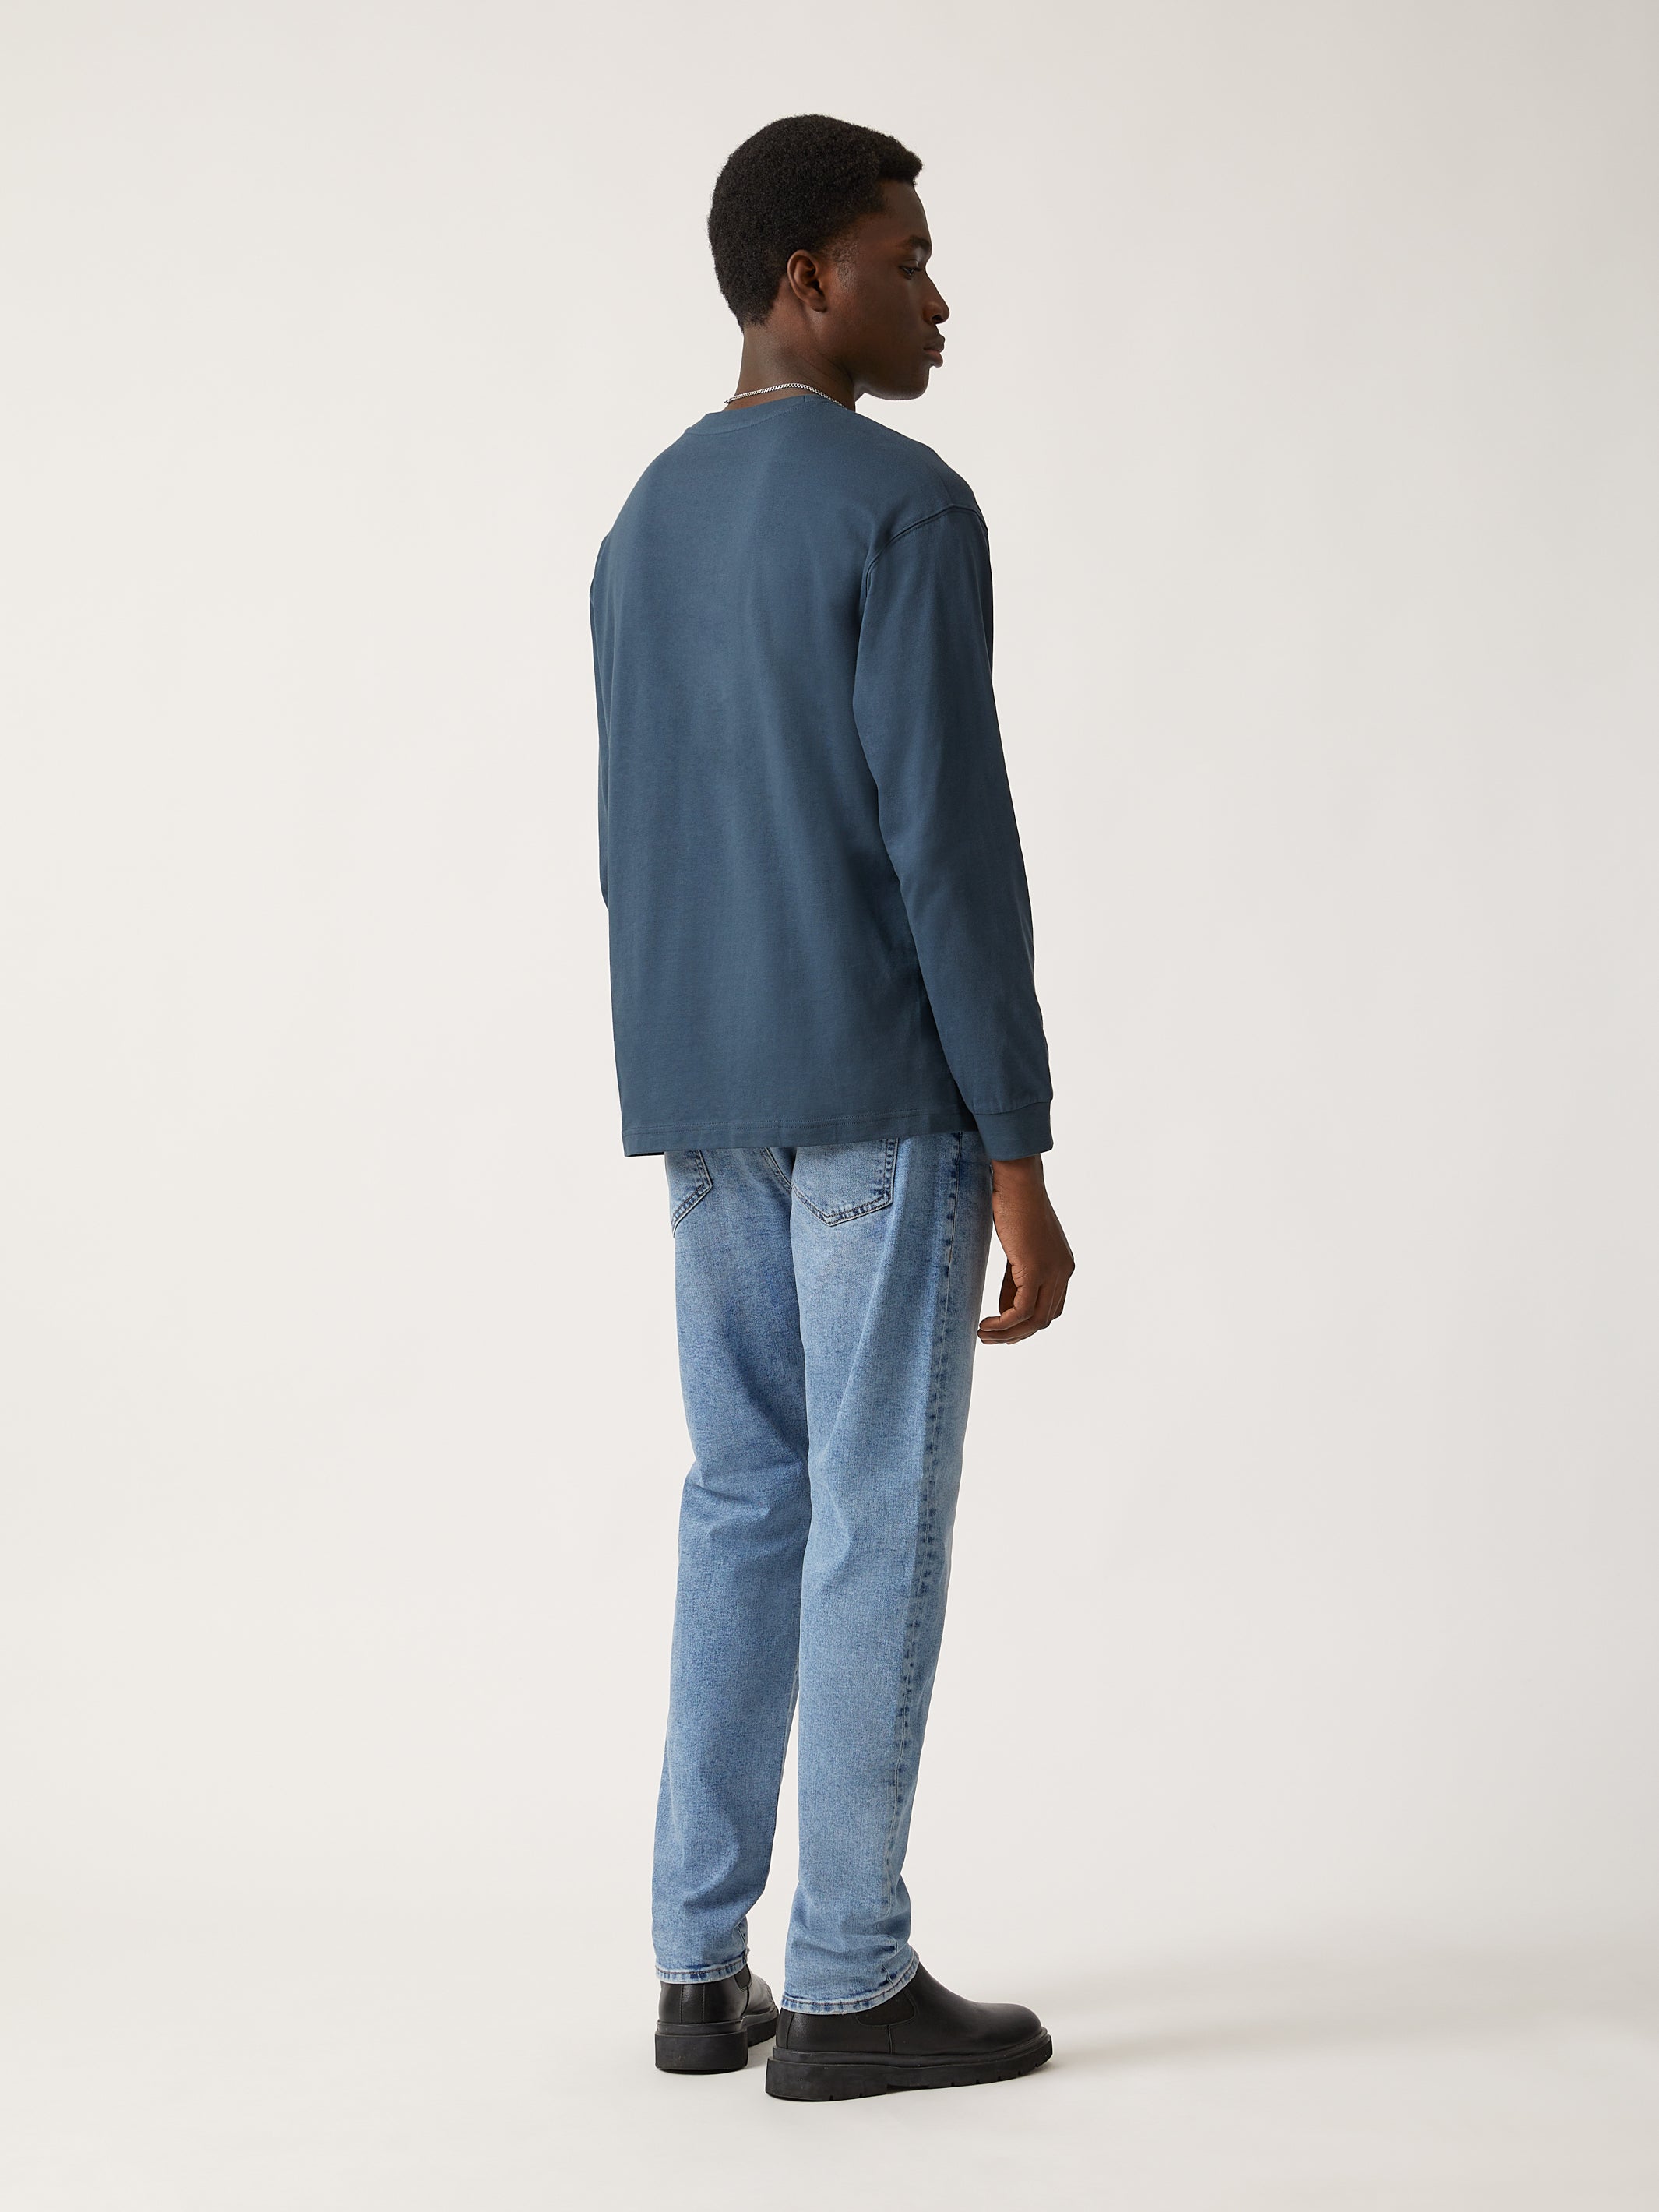 Men's Brooklyn Water Tower Long Sleeve T-shirt in Moonlit Ocean - BROOKLYN INDUSTRIES